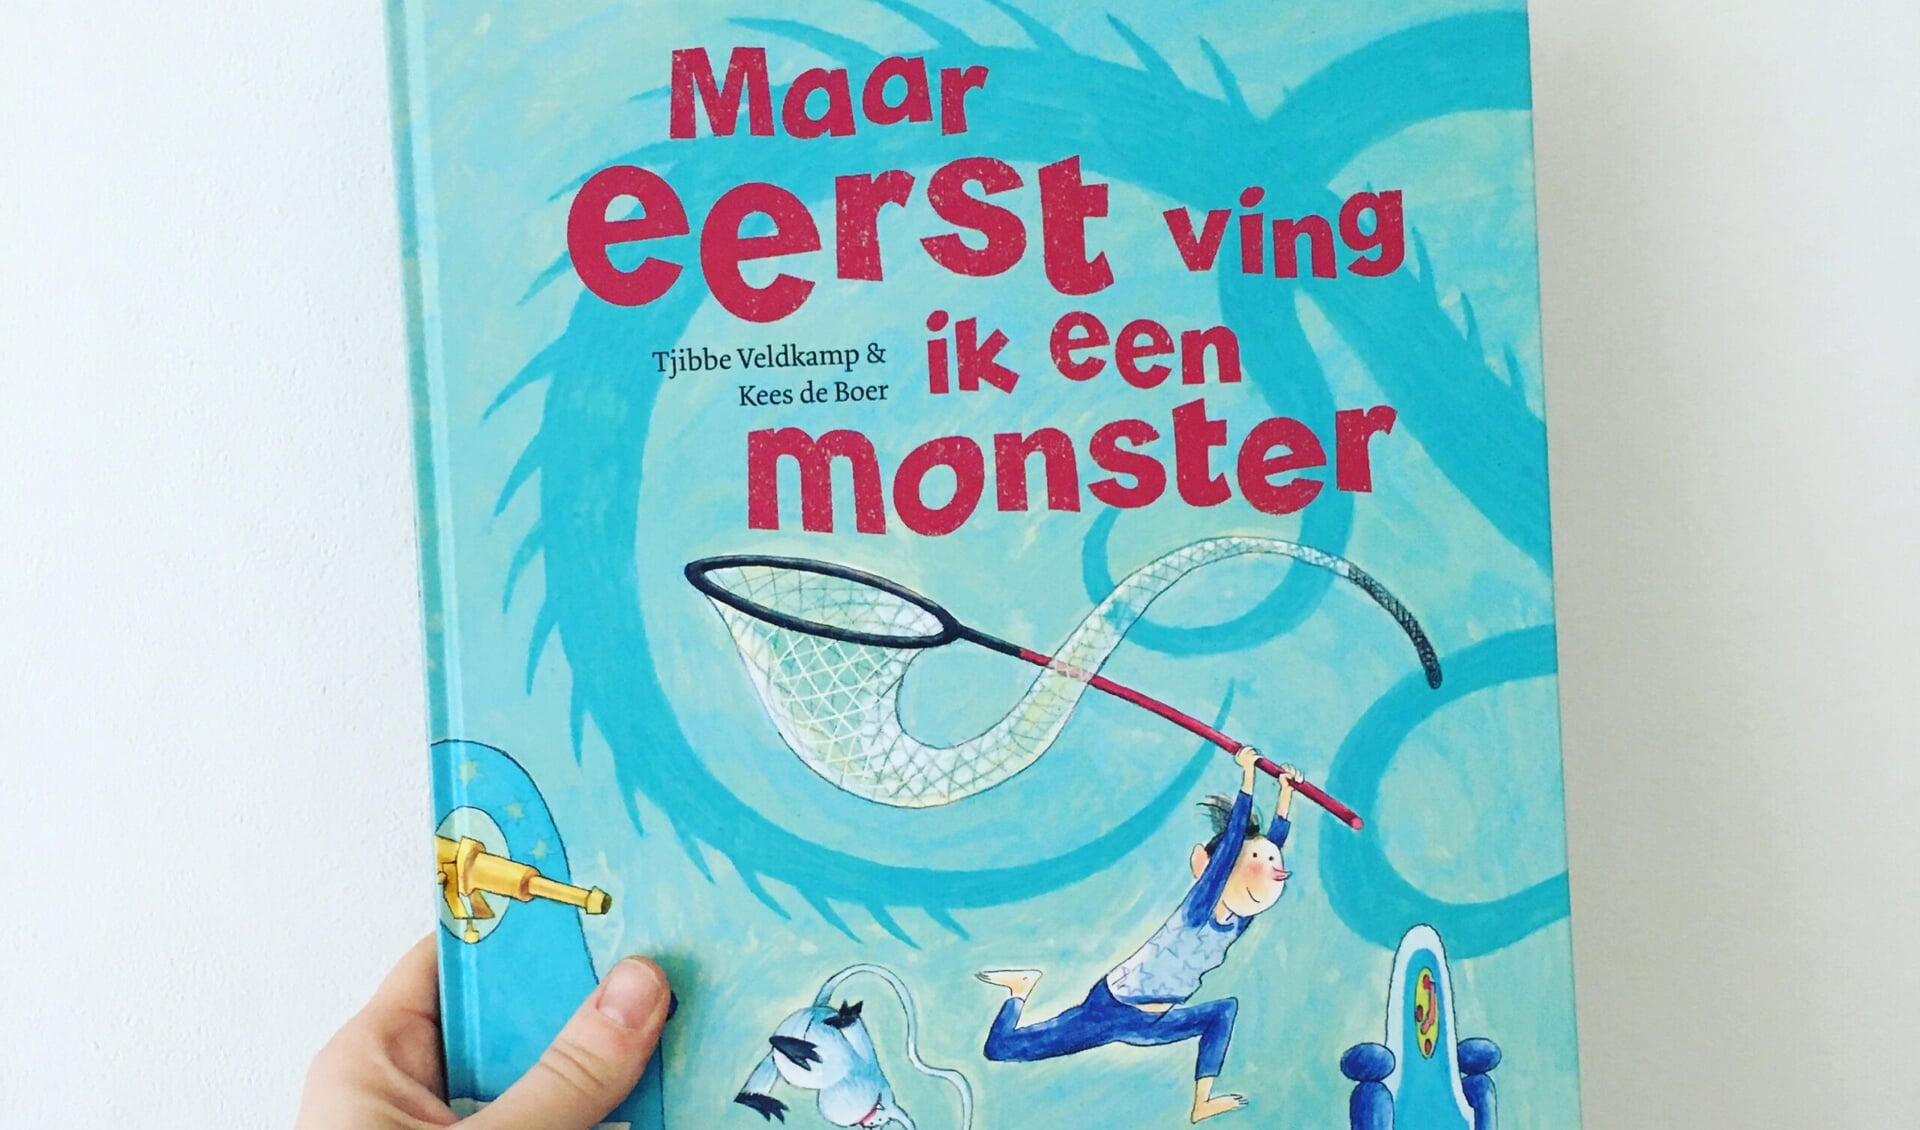  'Maar eerst ving ik een monster' van schrijver Tjibbe Veldkamp en illustrator Kees de Boer